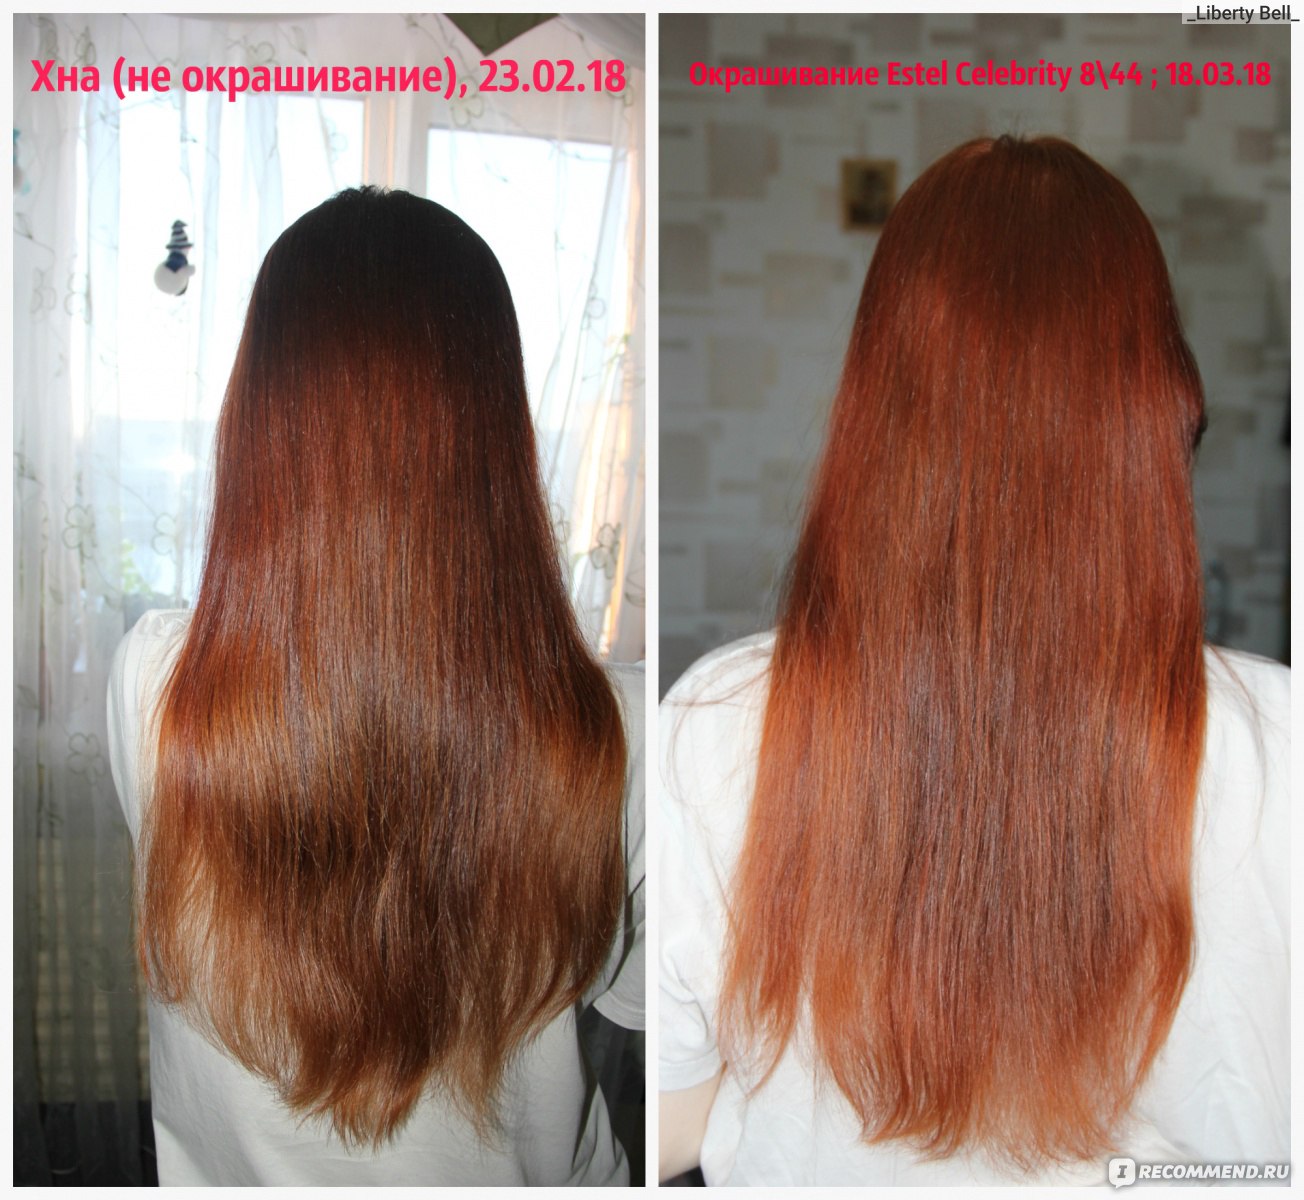 Волосы до и после хны бесцветной